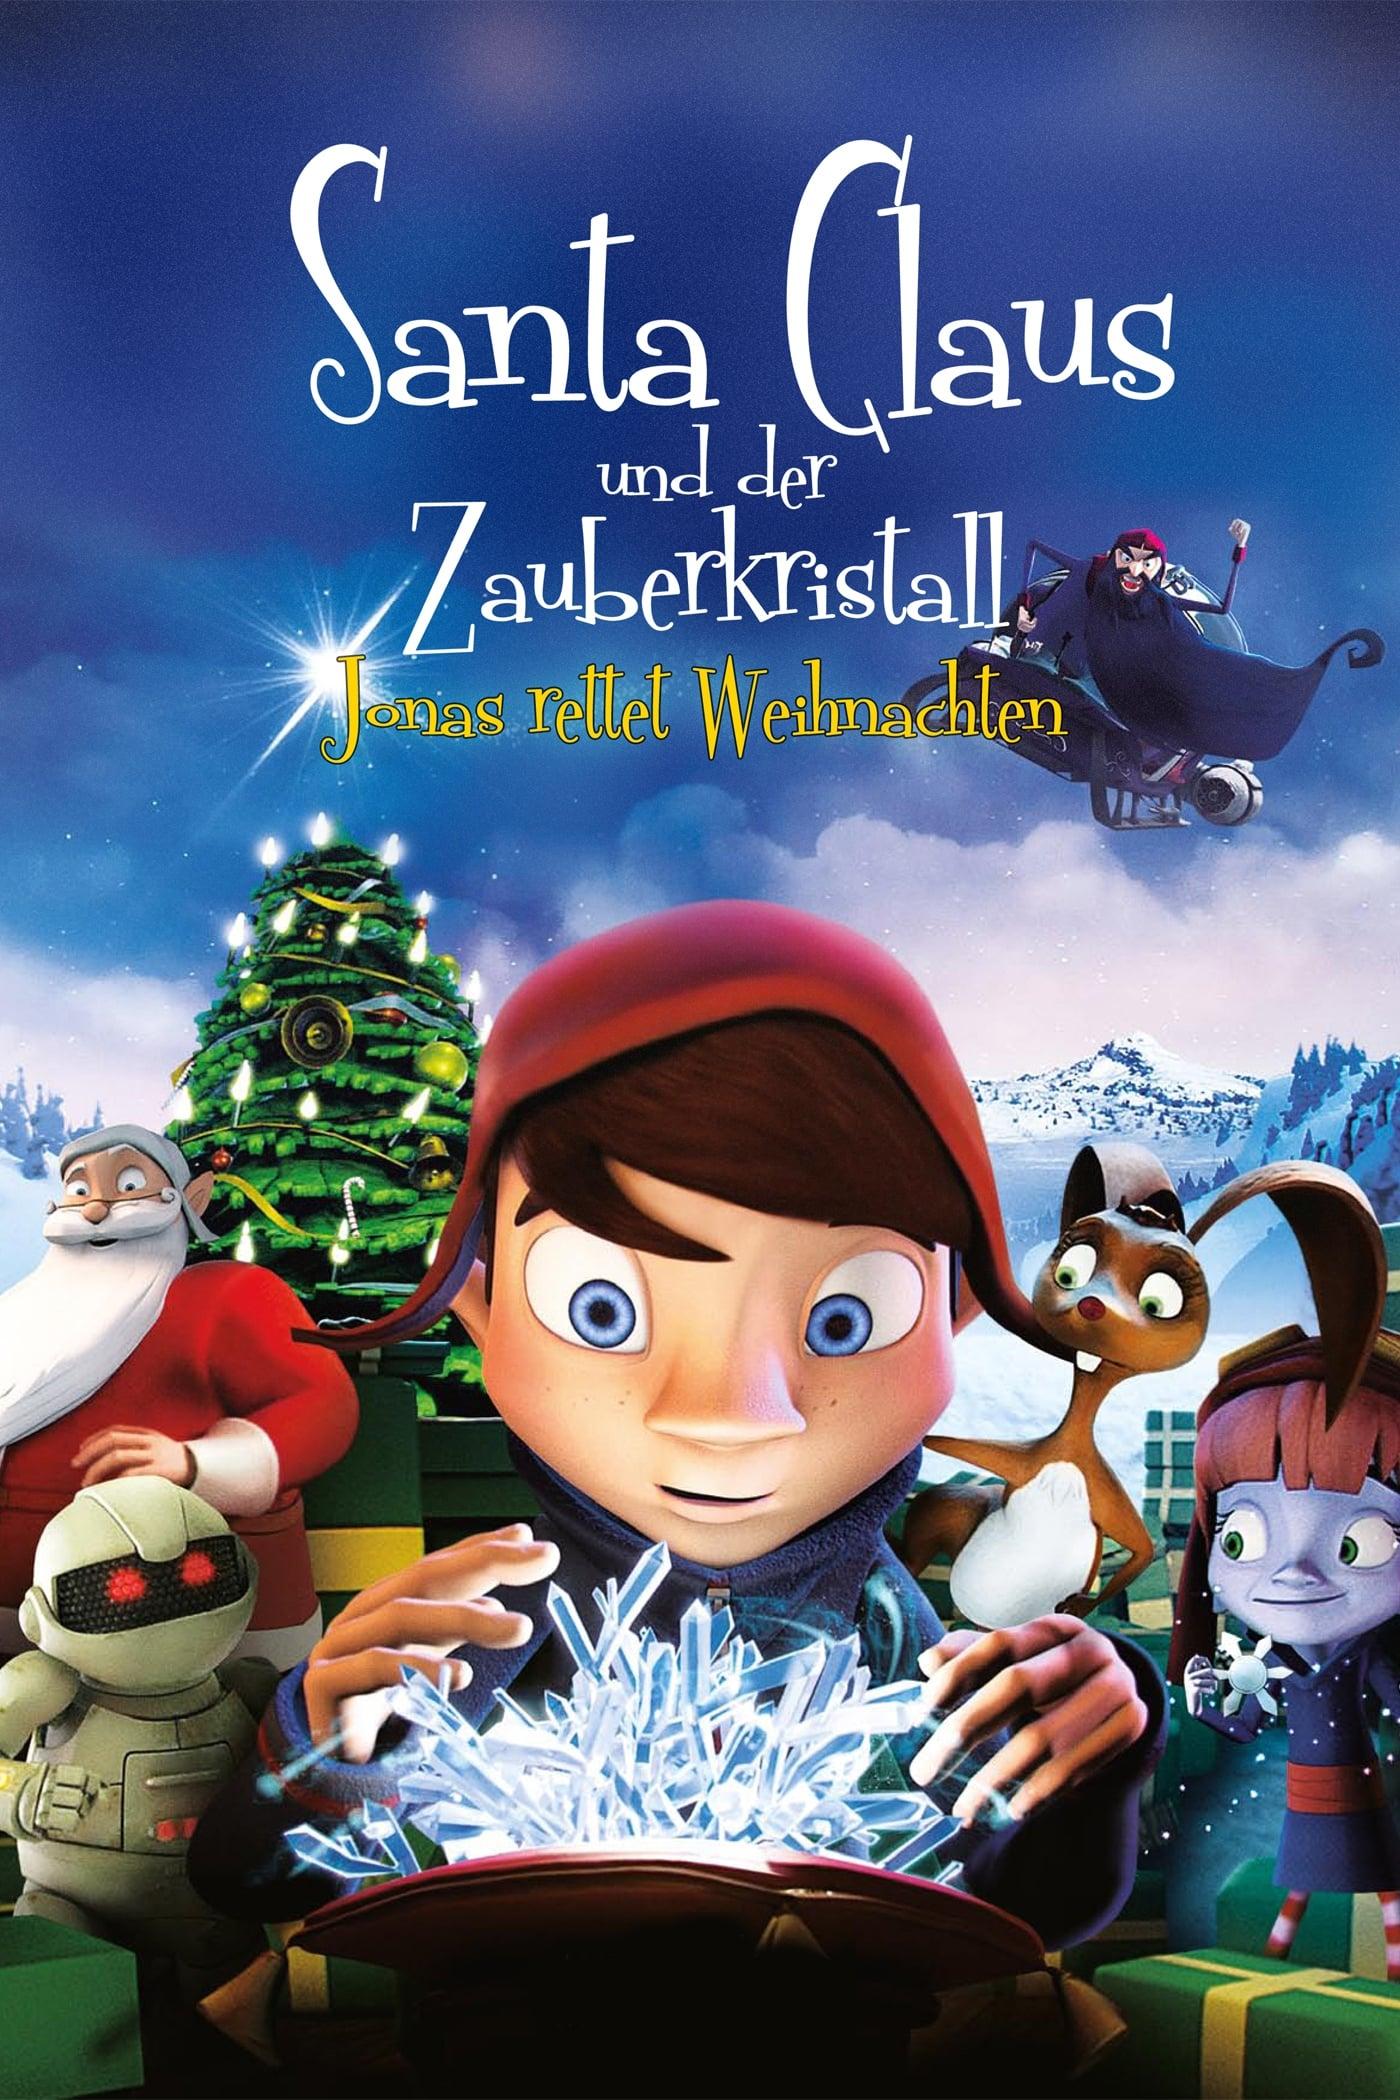 Santa Claus und der Zauberkristall - Jonas rettet Weihnachten poster